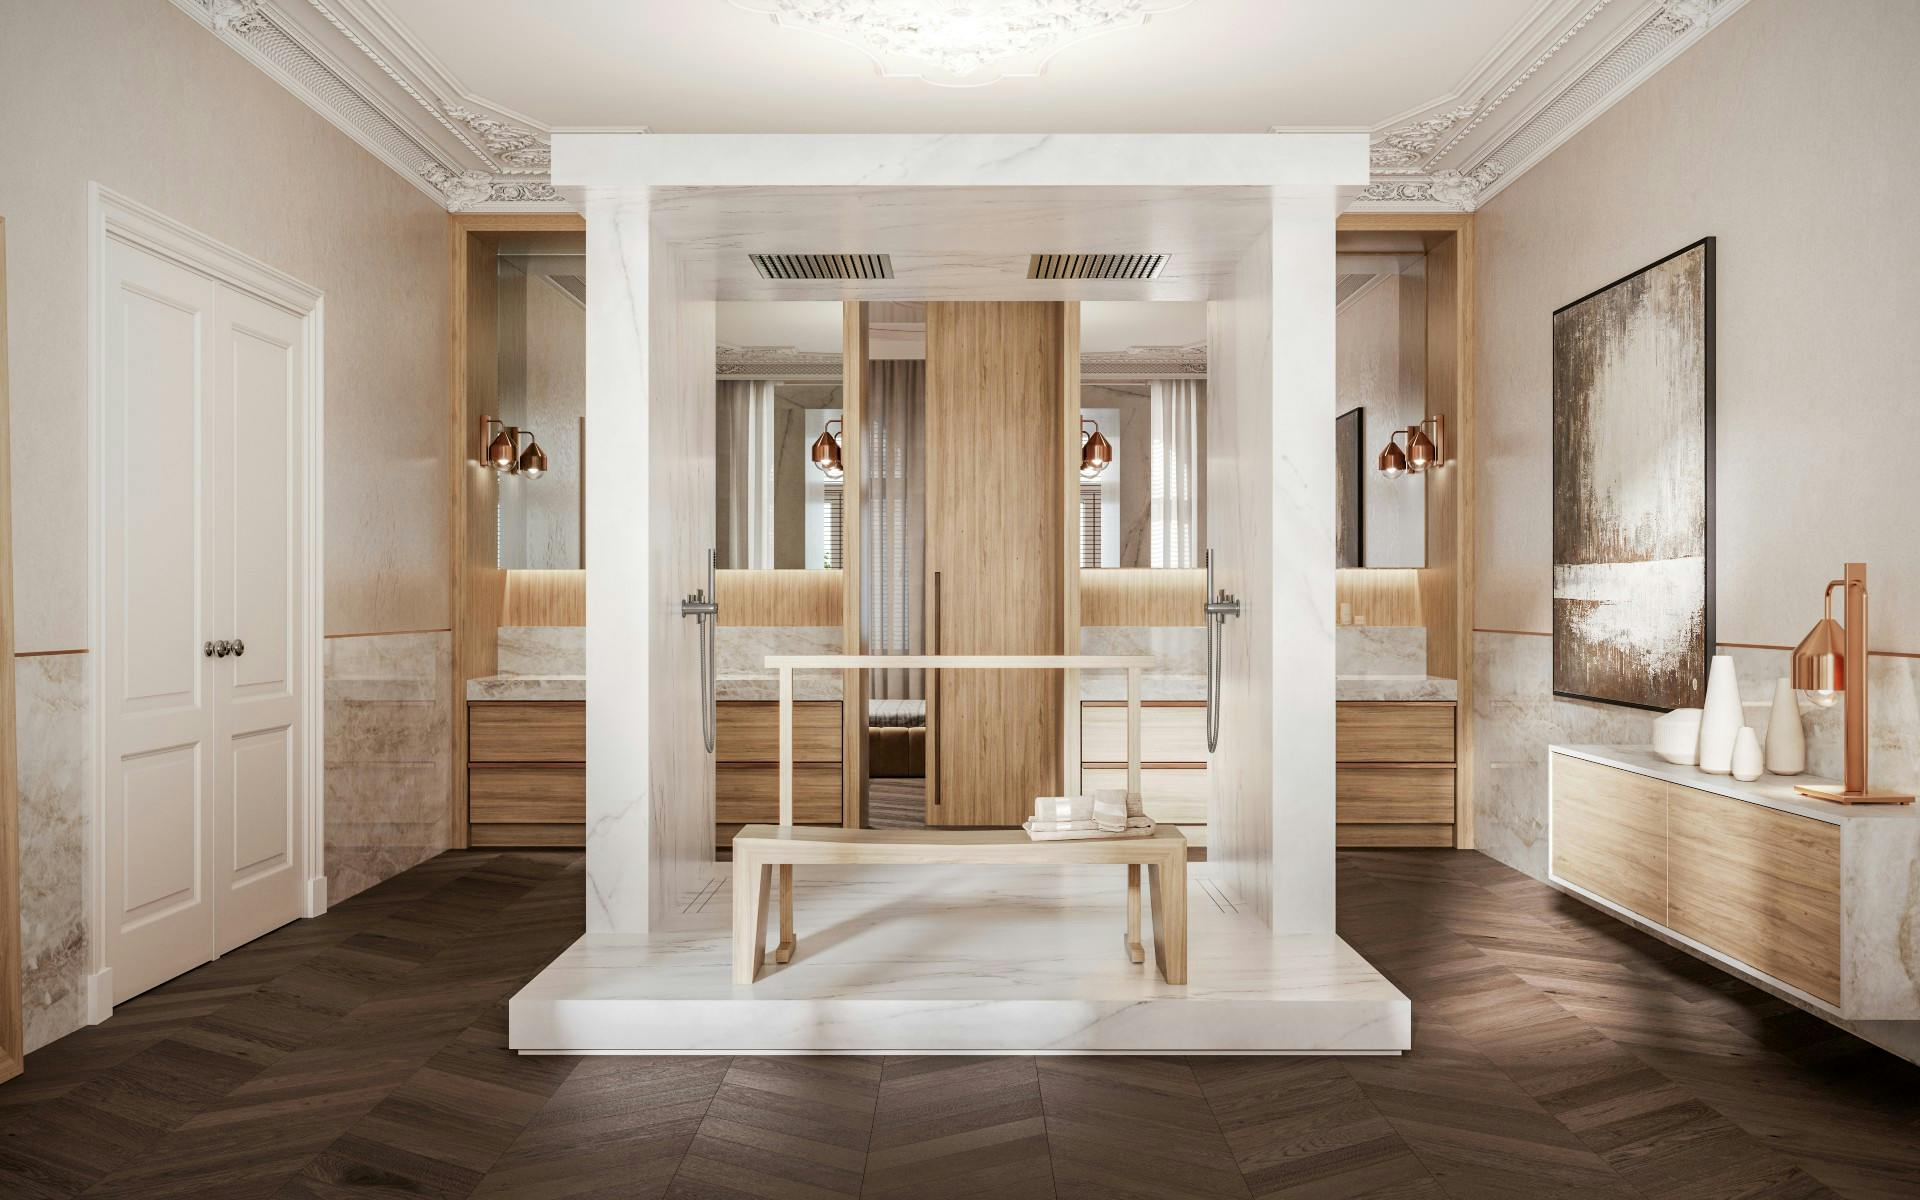 Bildnummer 32 des aktuellen Abschnitts von The Palazzo: the bathroom designed by Remy Meijers in which the shower takes centre stage von Cosentino Deutschland